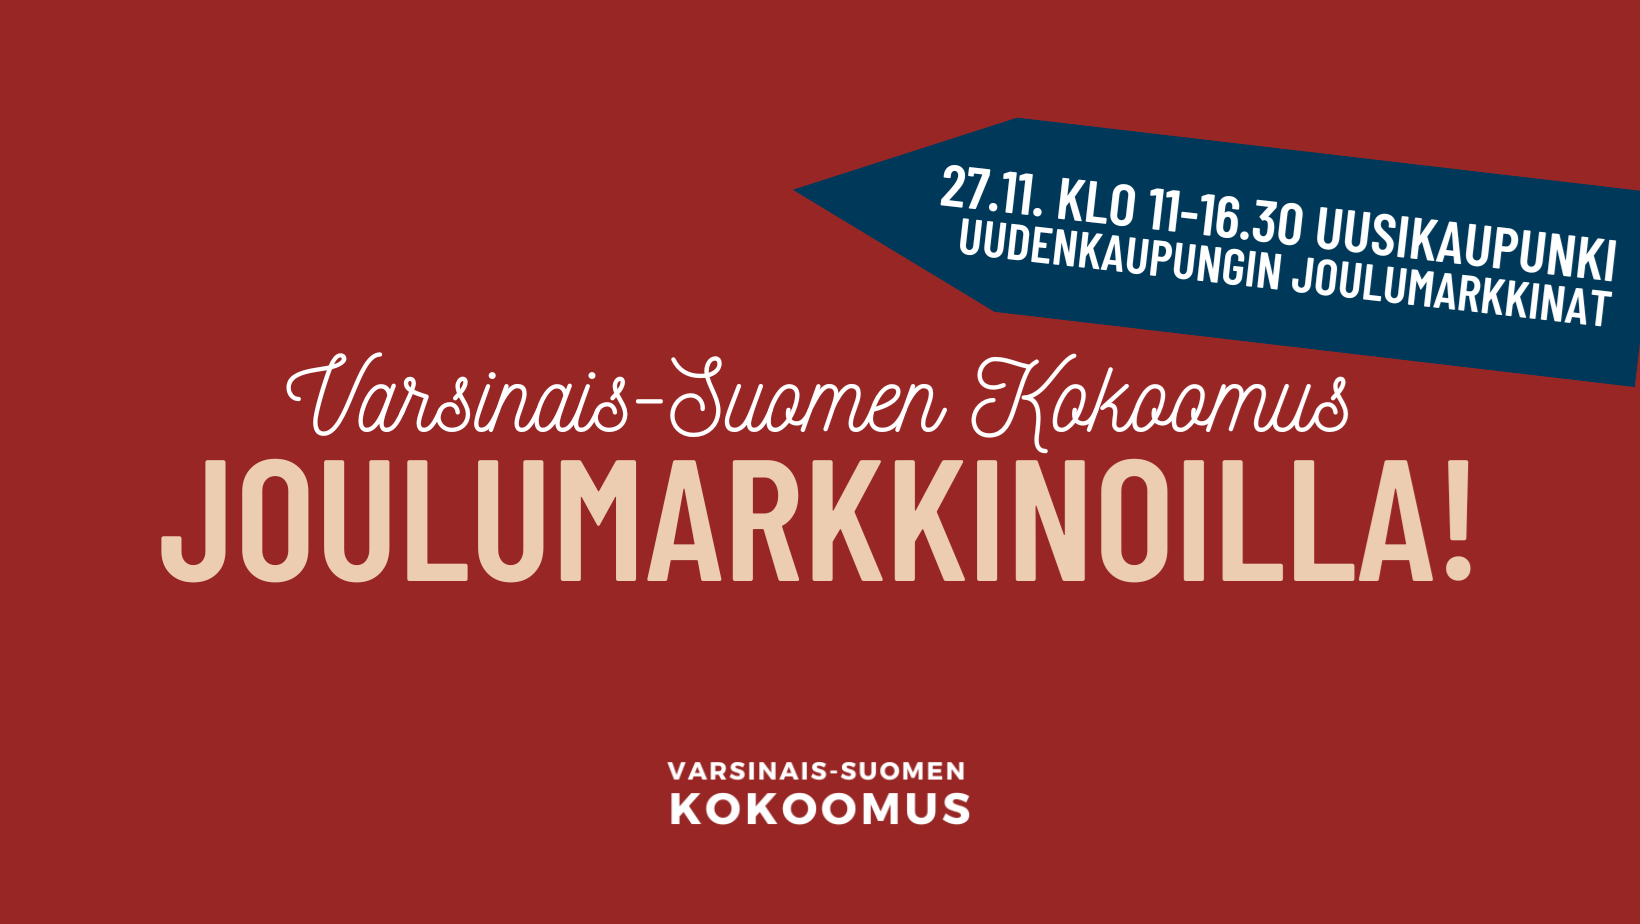 Varsinais-Suomen Kokoomus Uudenkaupungin joulumarkkinoilla!   11:00  16:30